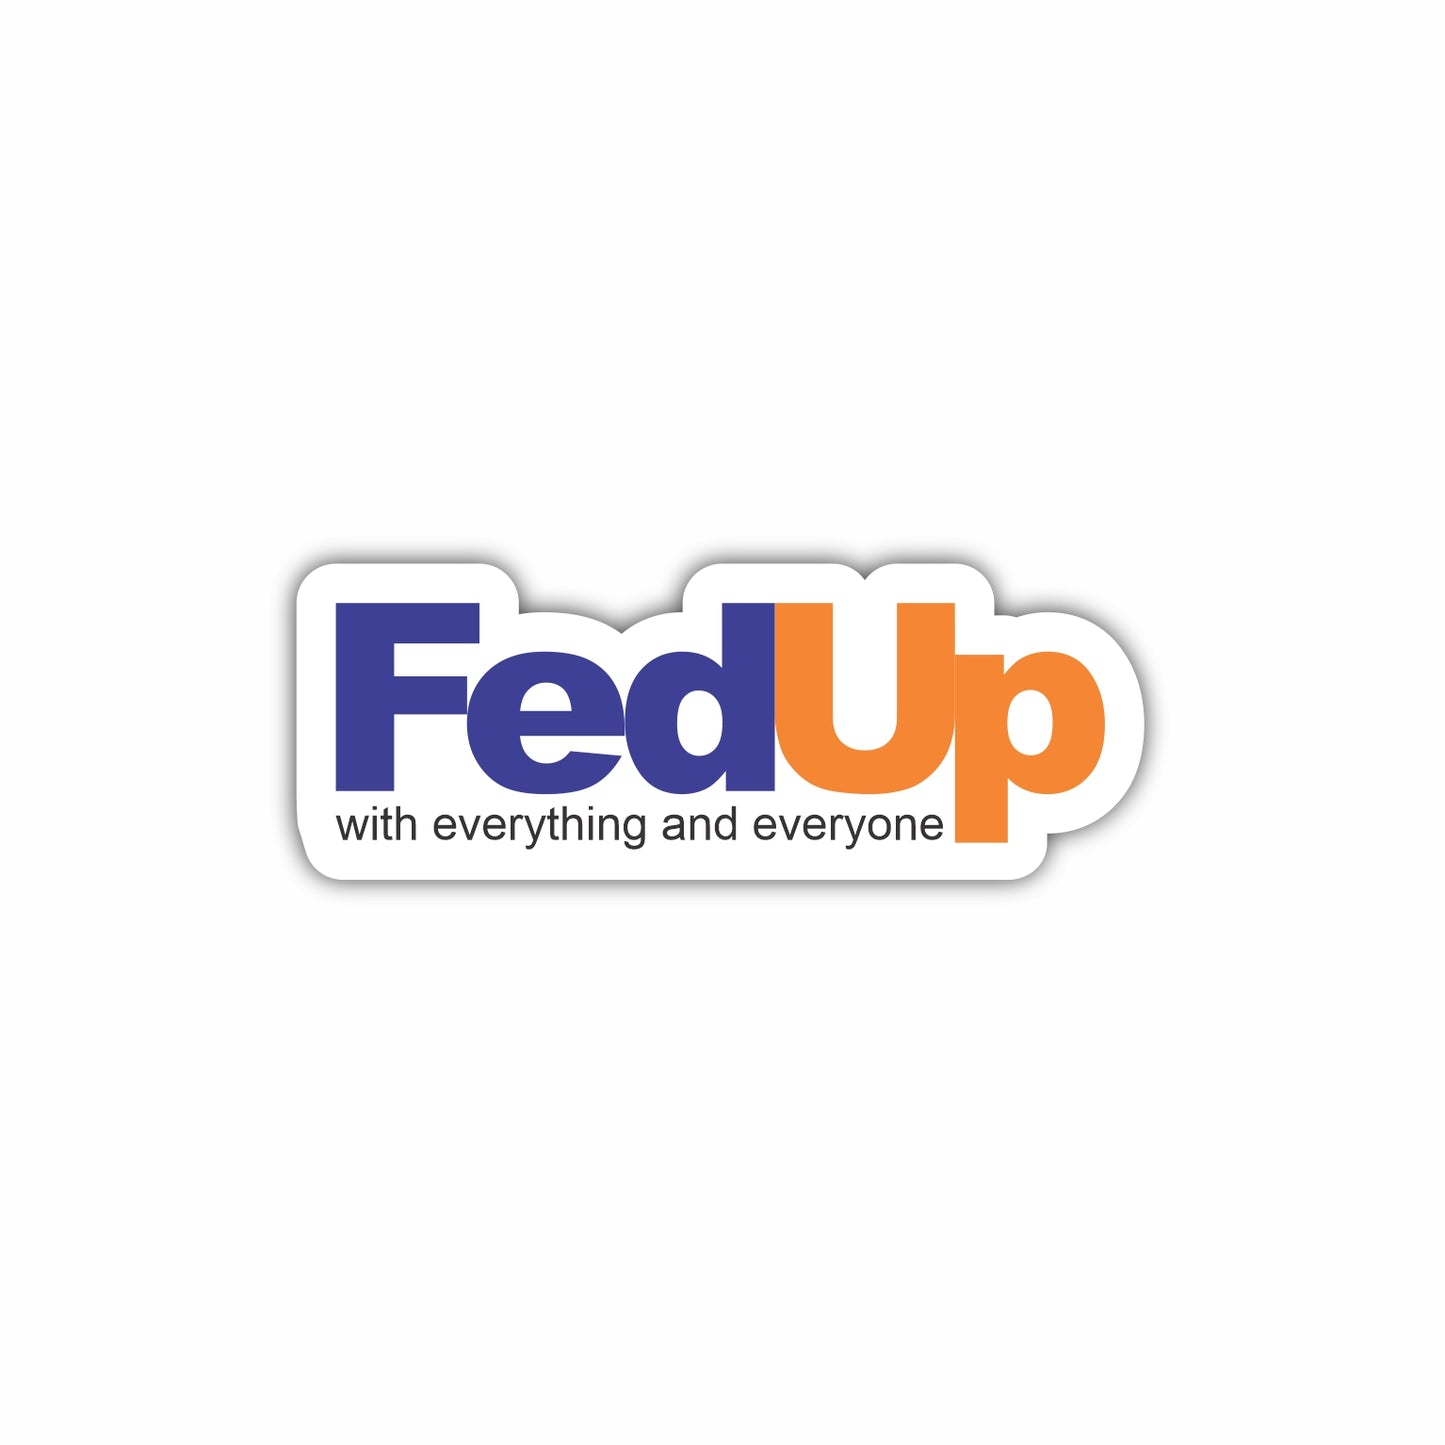 FedUp Sticker Decal